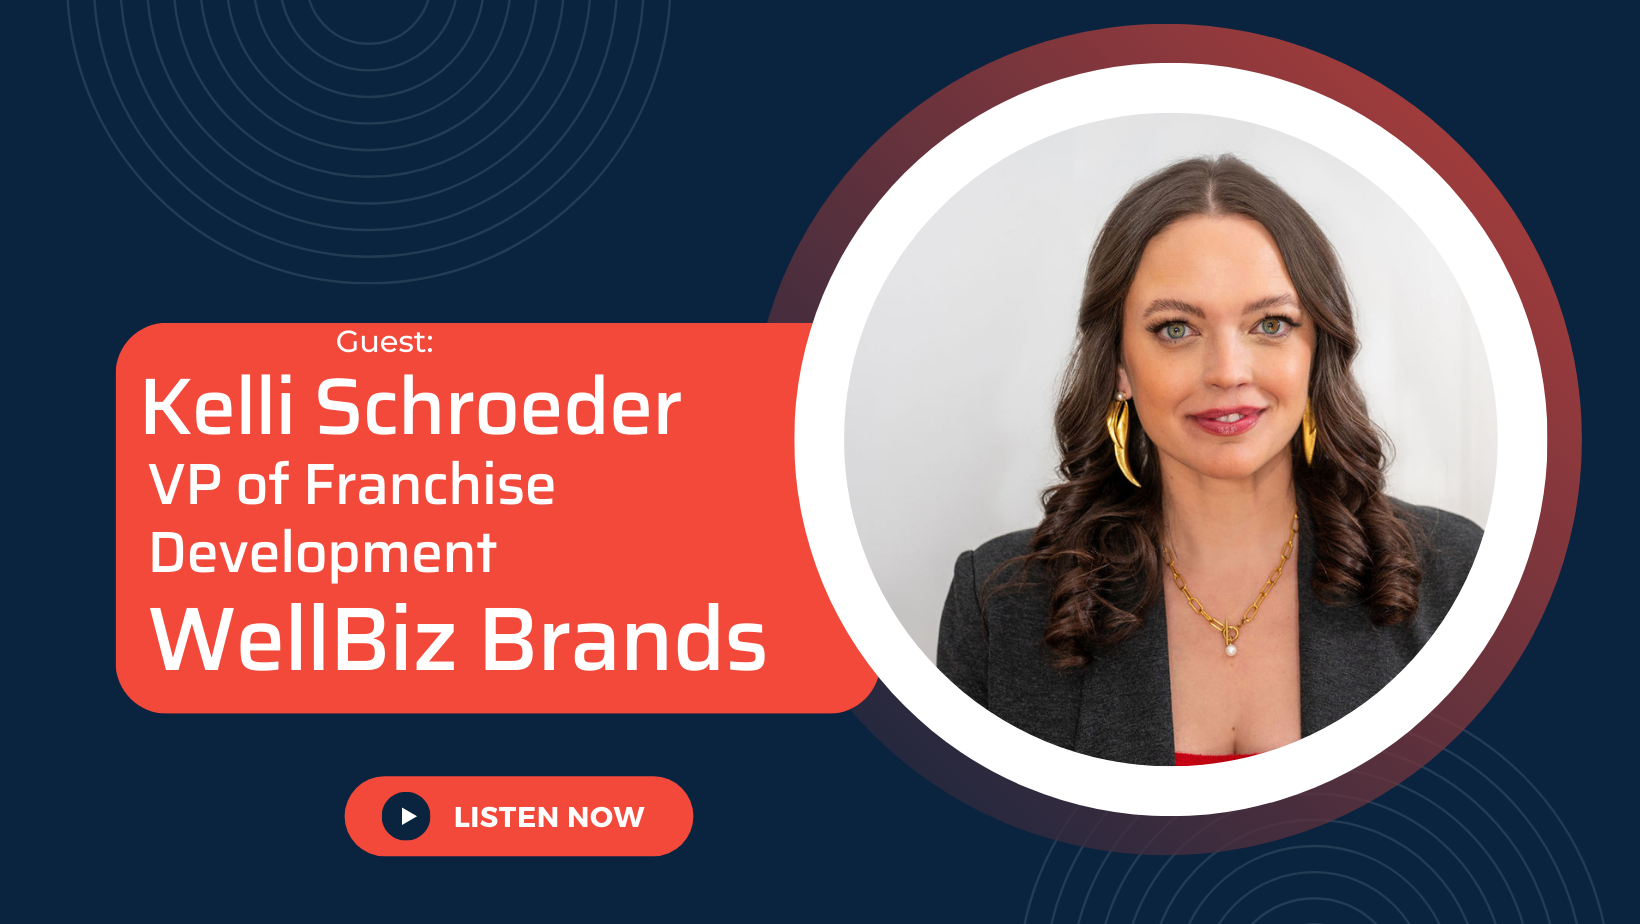 Franchising Secrets With the VP of Franchise Development at WellBiz Brands, Kelli Schroeder